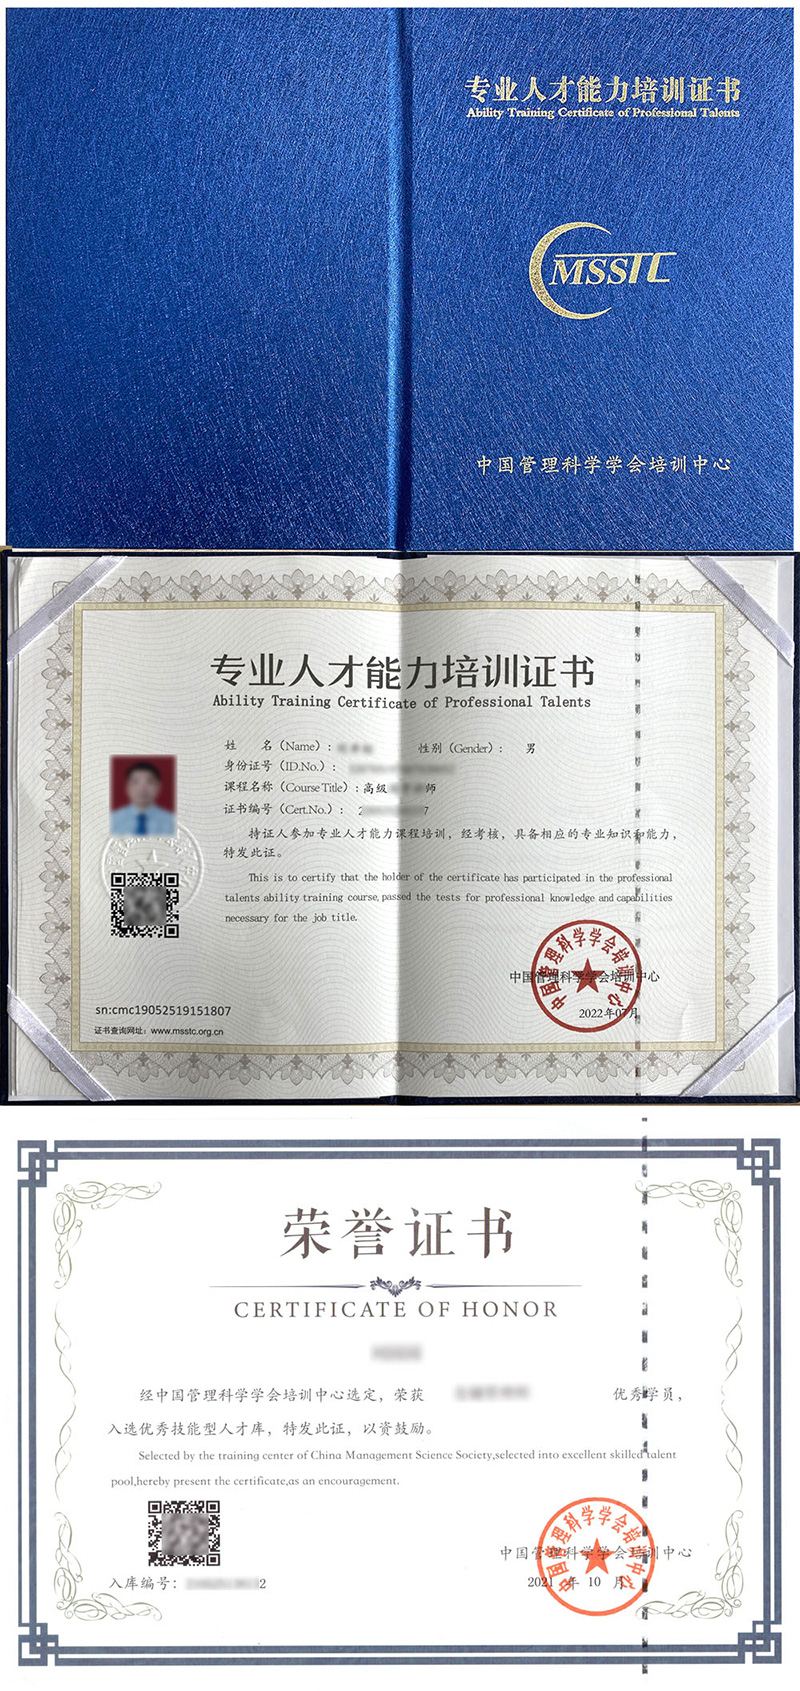 中国管理科学学会培训中心 专业人才能力培训证书 应急救援推广师证证书样本